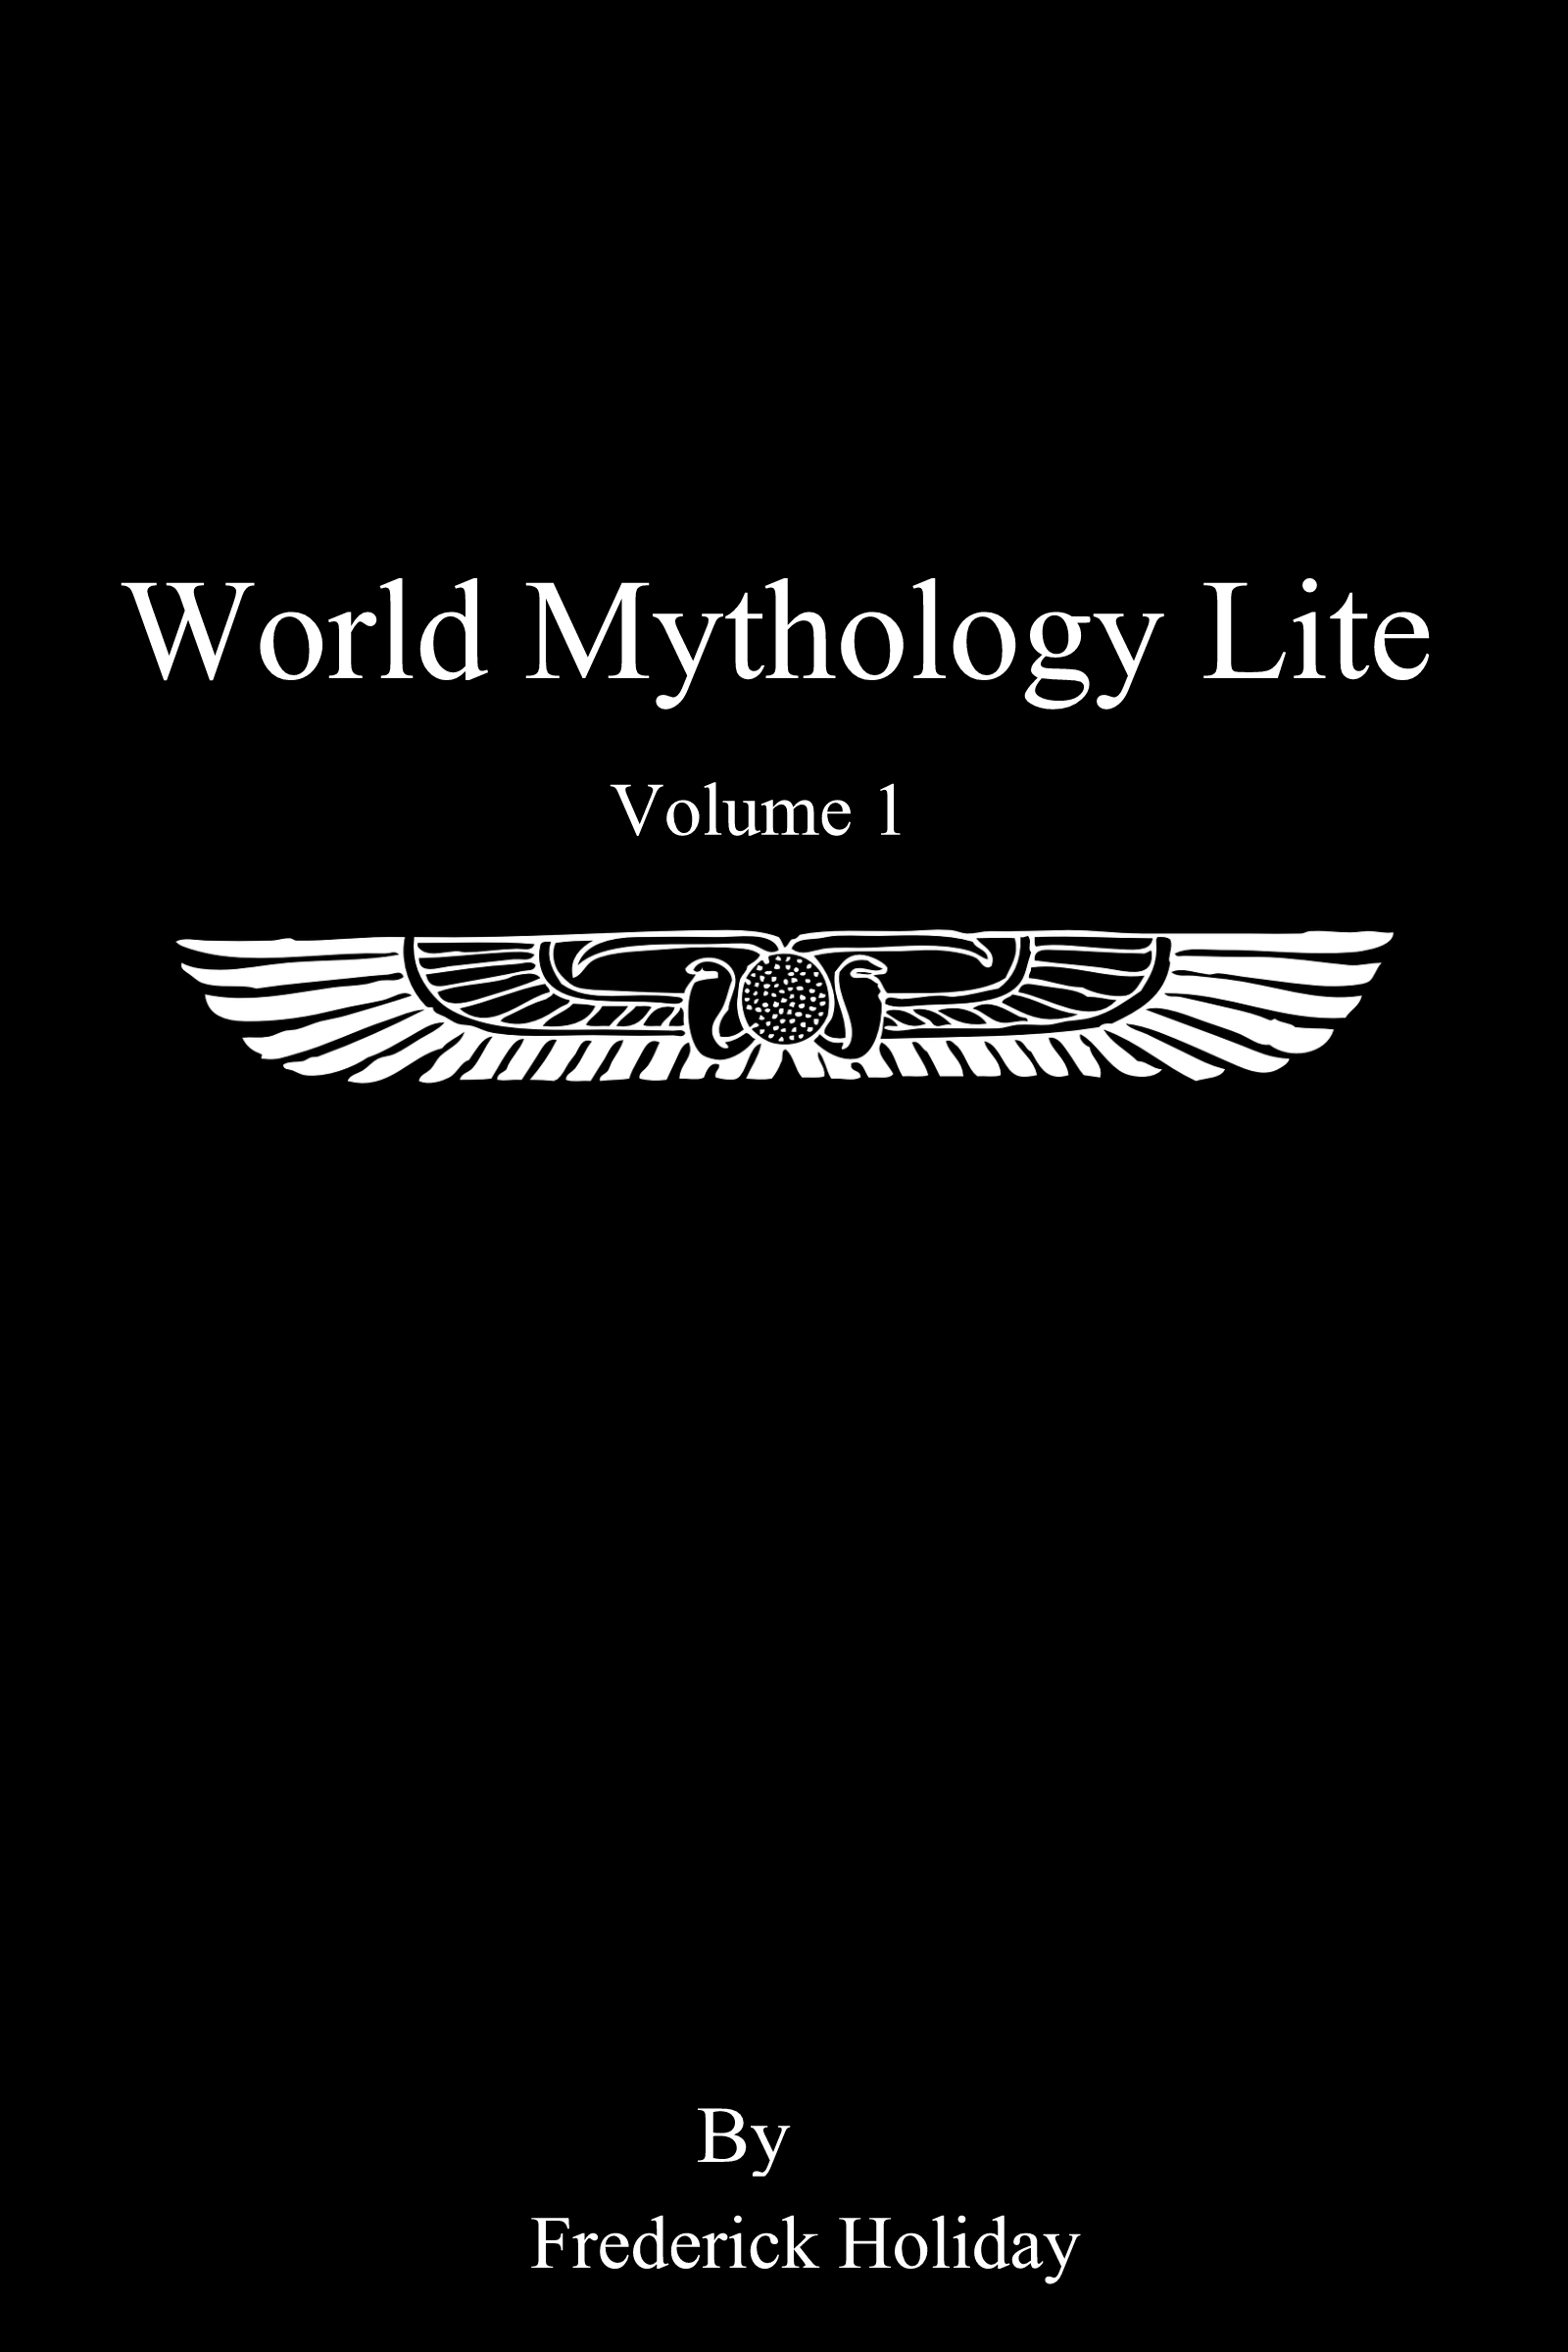 WorldMythologyLiteVol1-Black